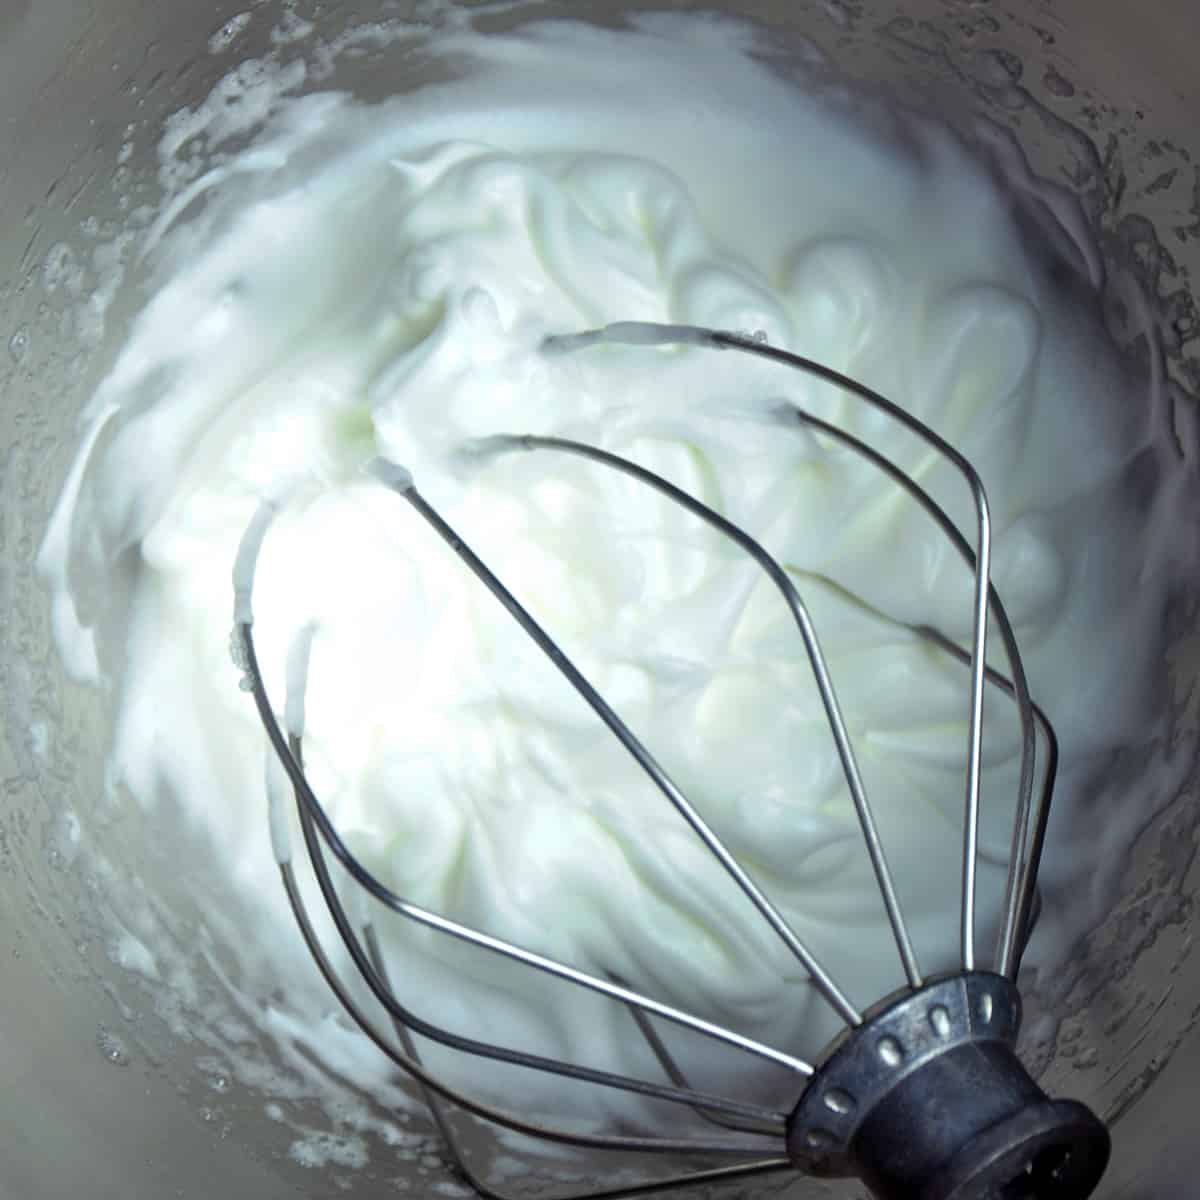 Whipped egg whites in KitchenAid mixing bowl.